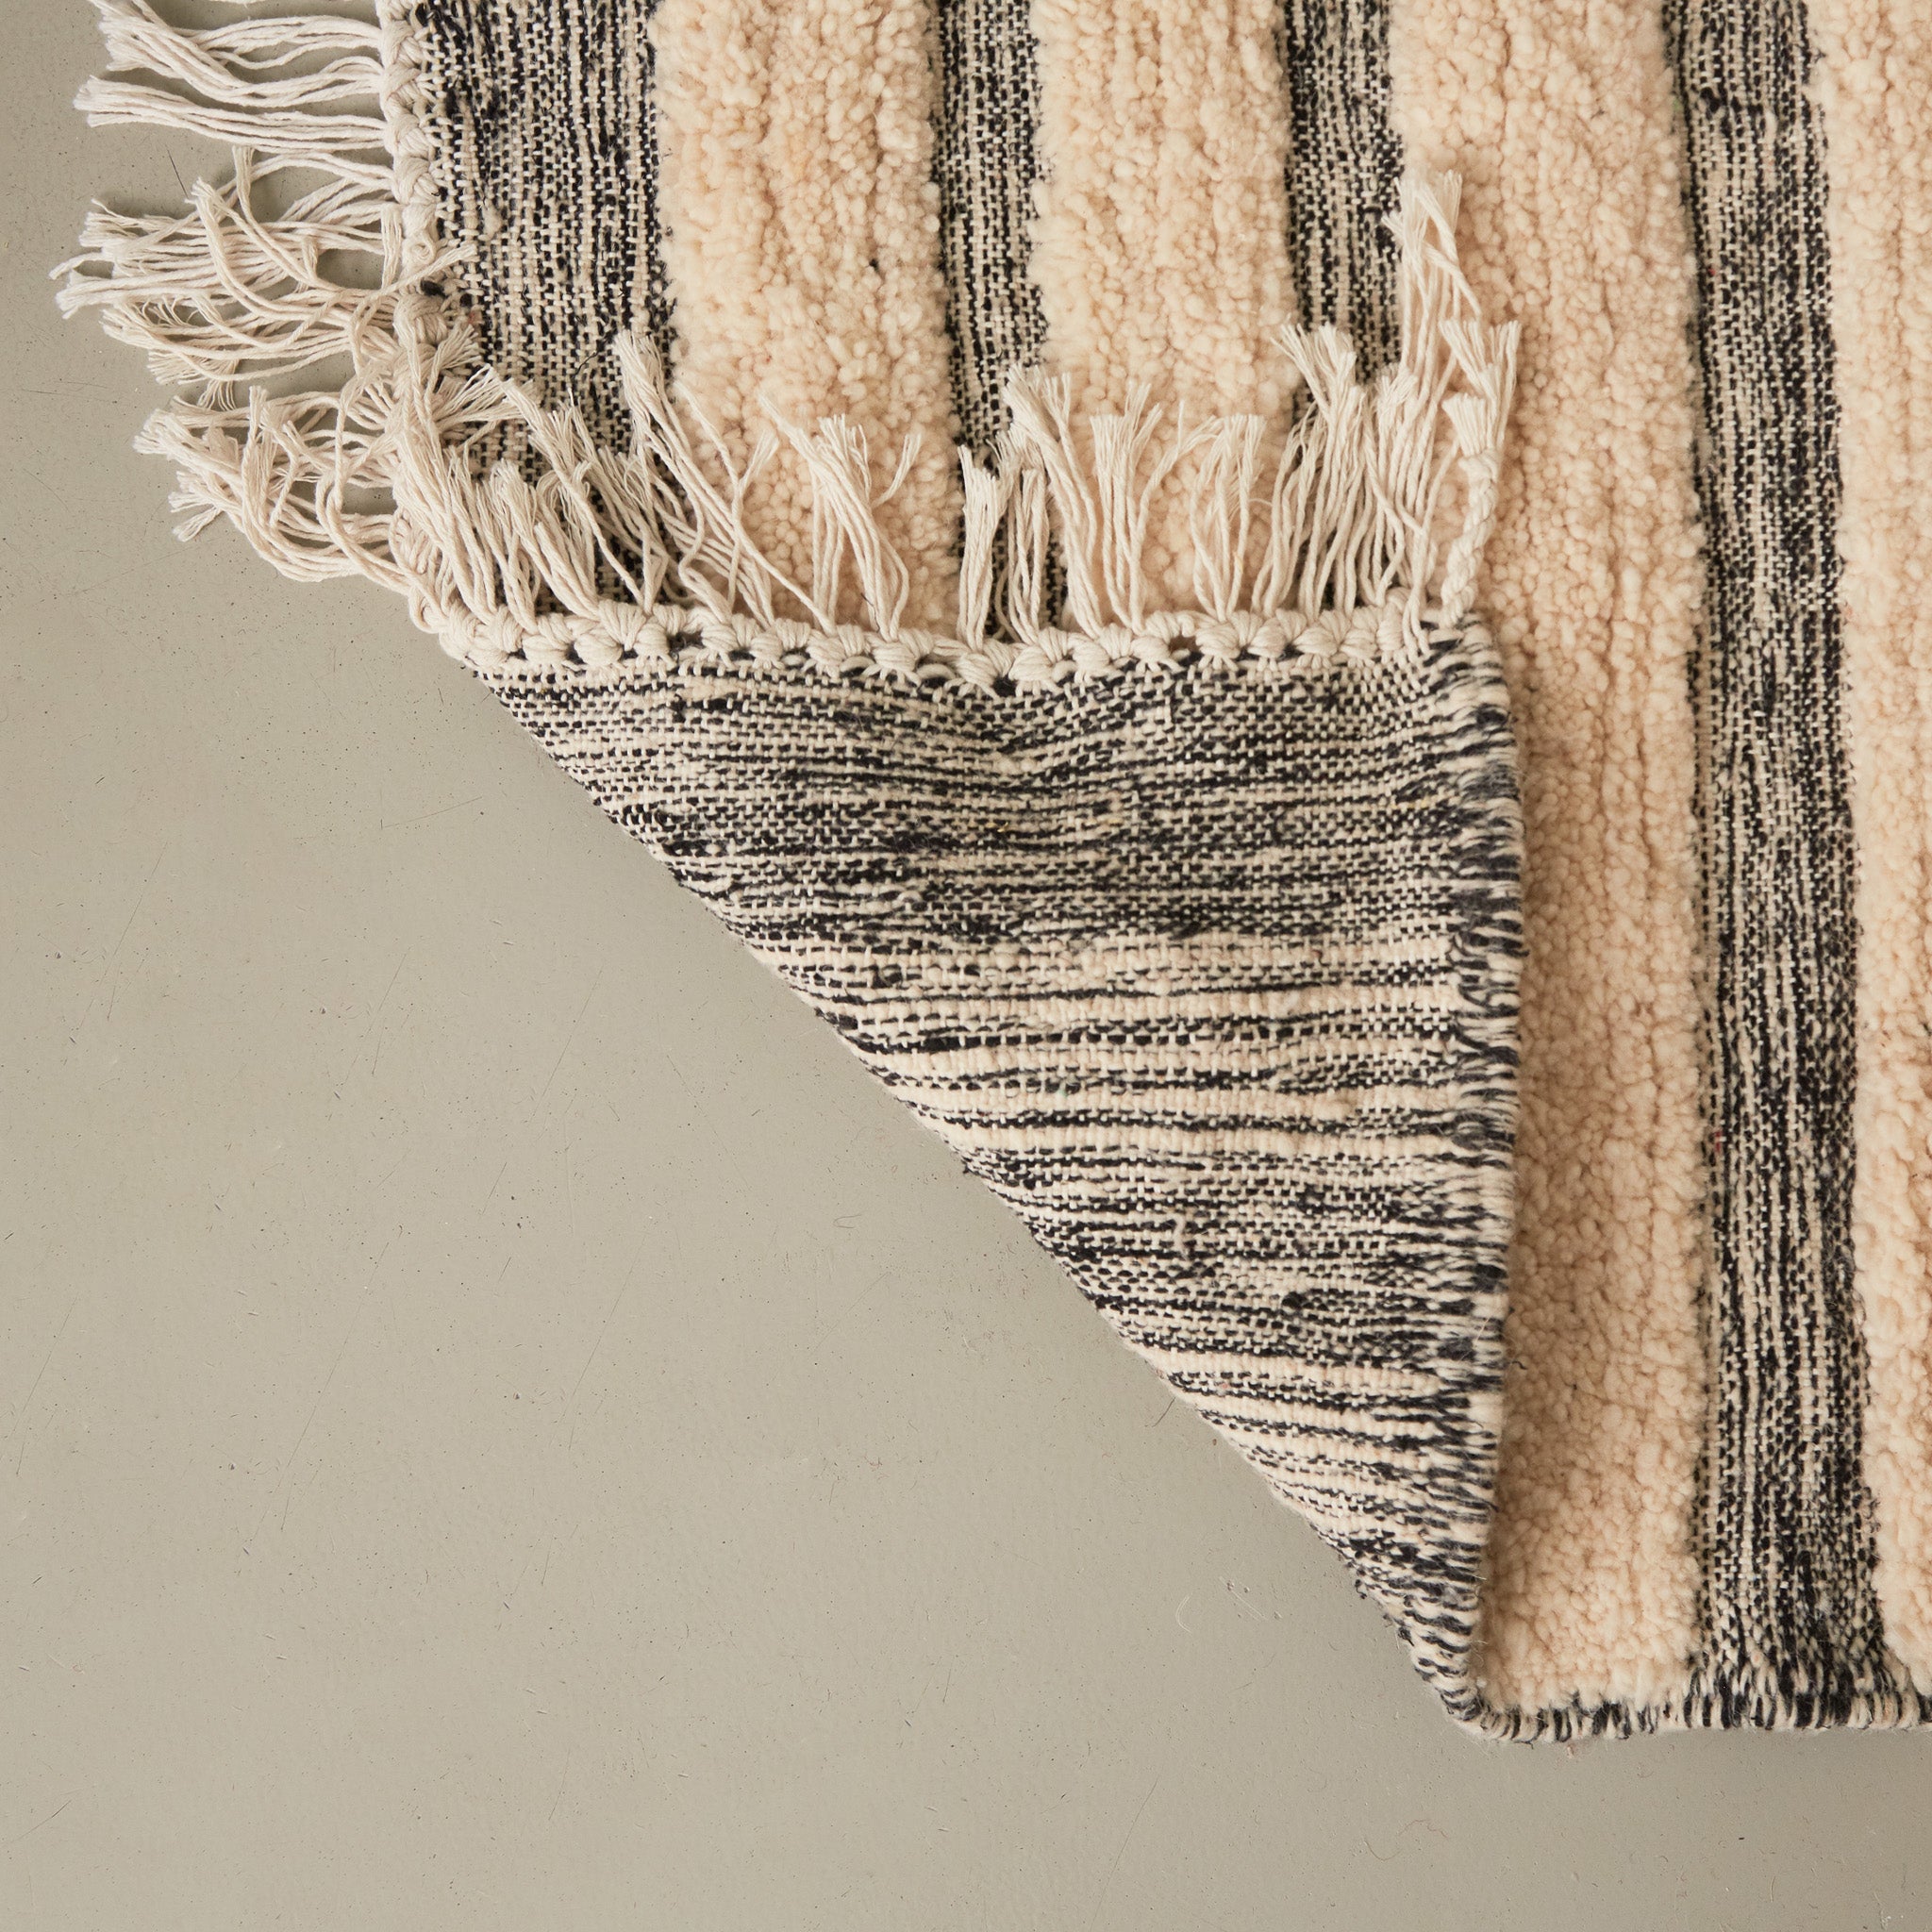 dettaglio del retro di un tappeto passatoia boujaad realizzato a mano con bande di lana bianca annodata e bande grigie tessute